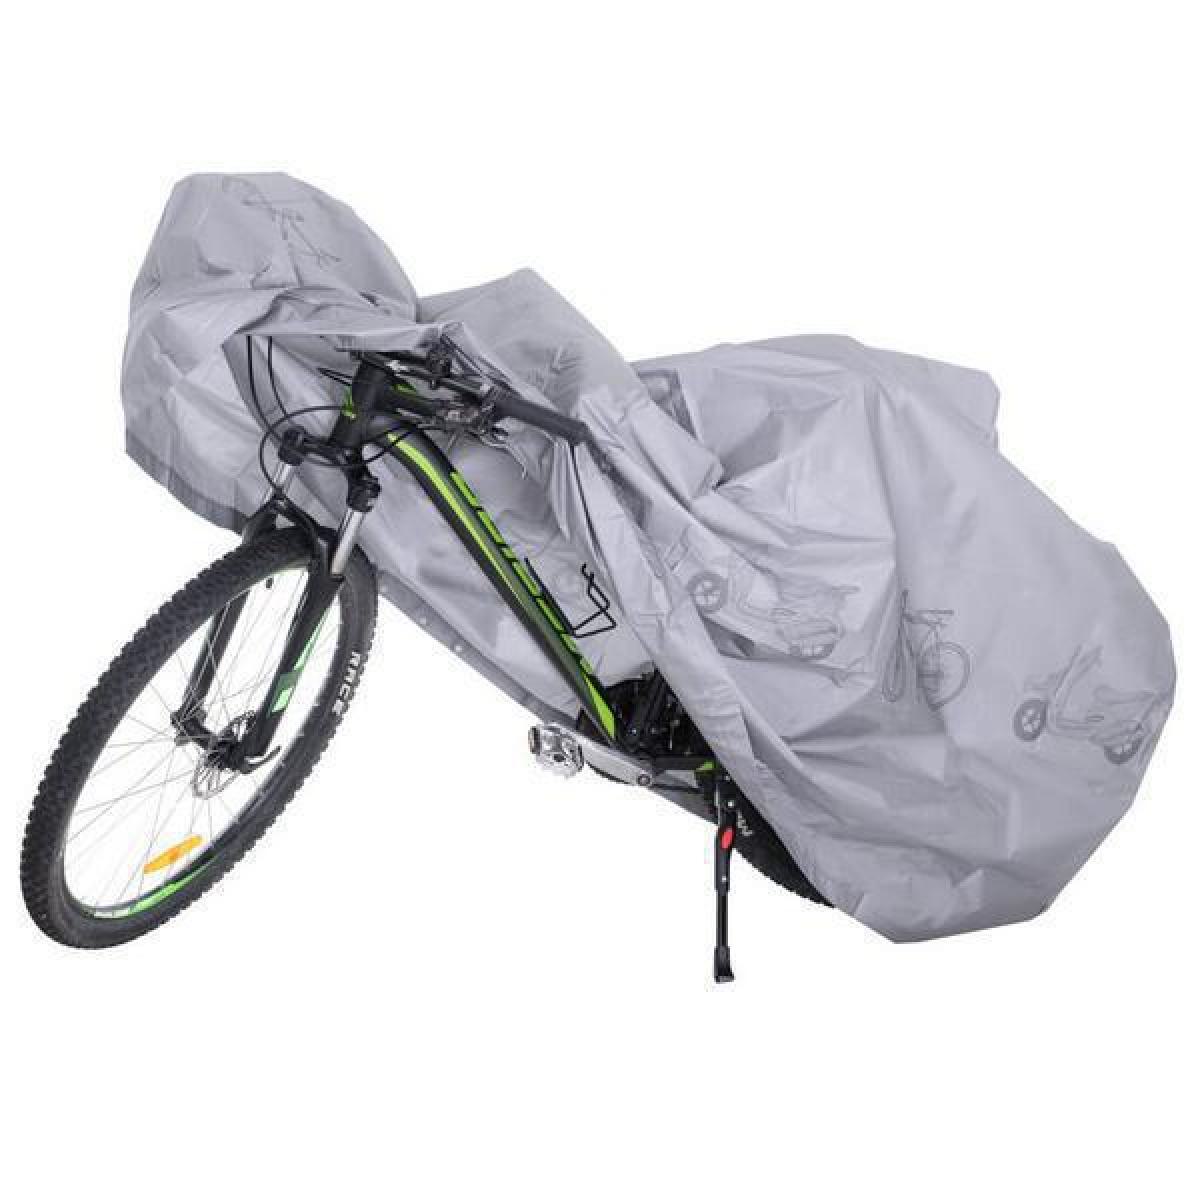 Αδιάβροχη Κουκούλα Ποδηλάτου - Μοτο L 200 cm x 110 cm Polyester